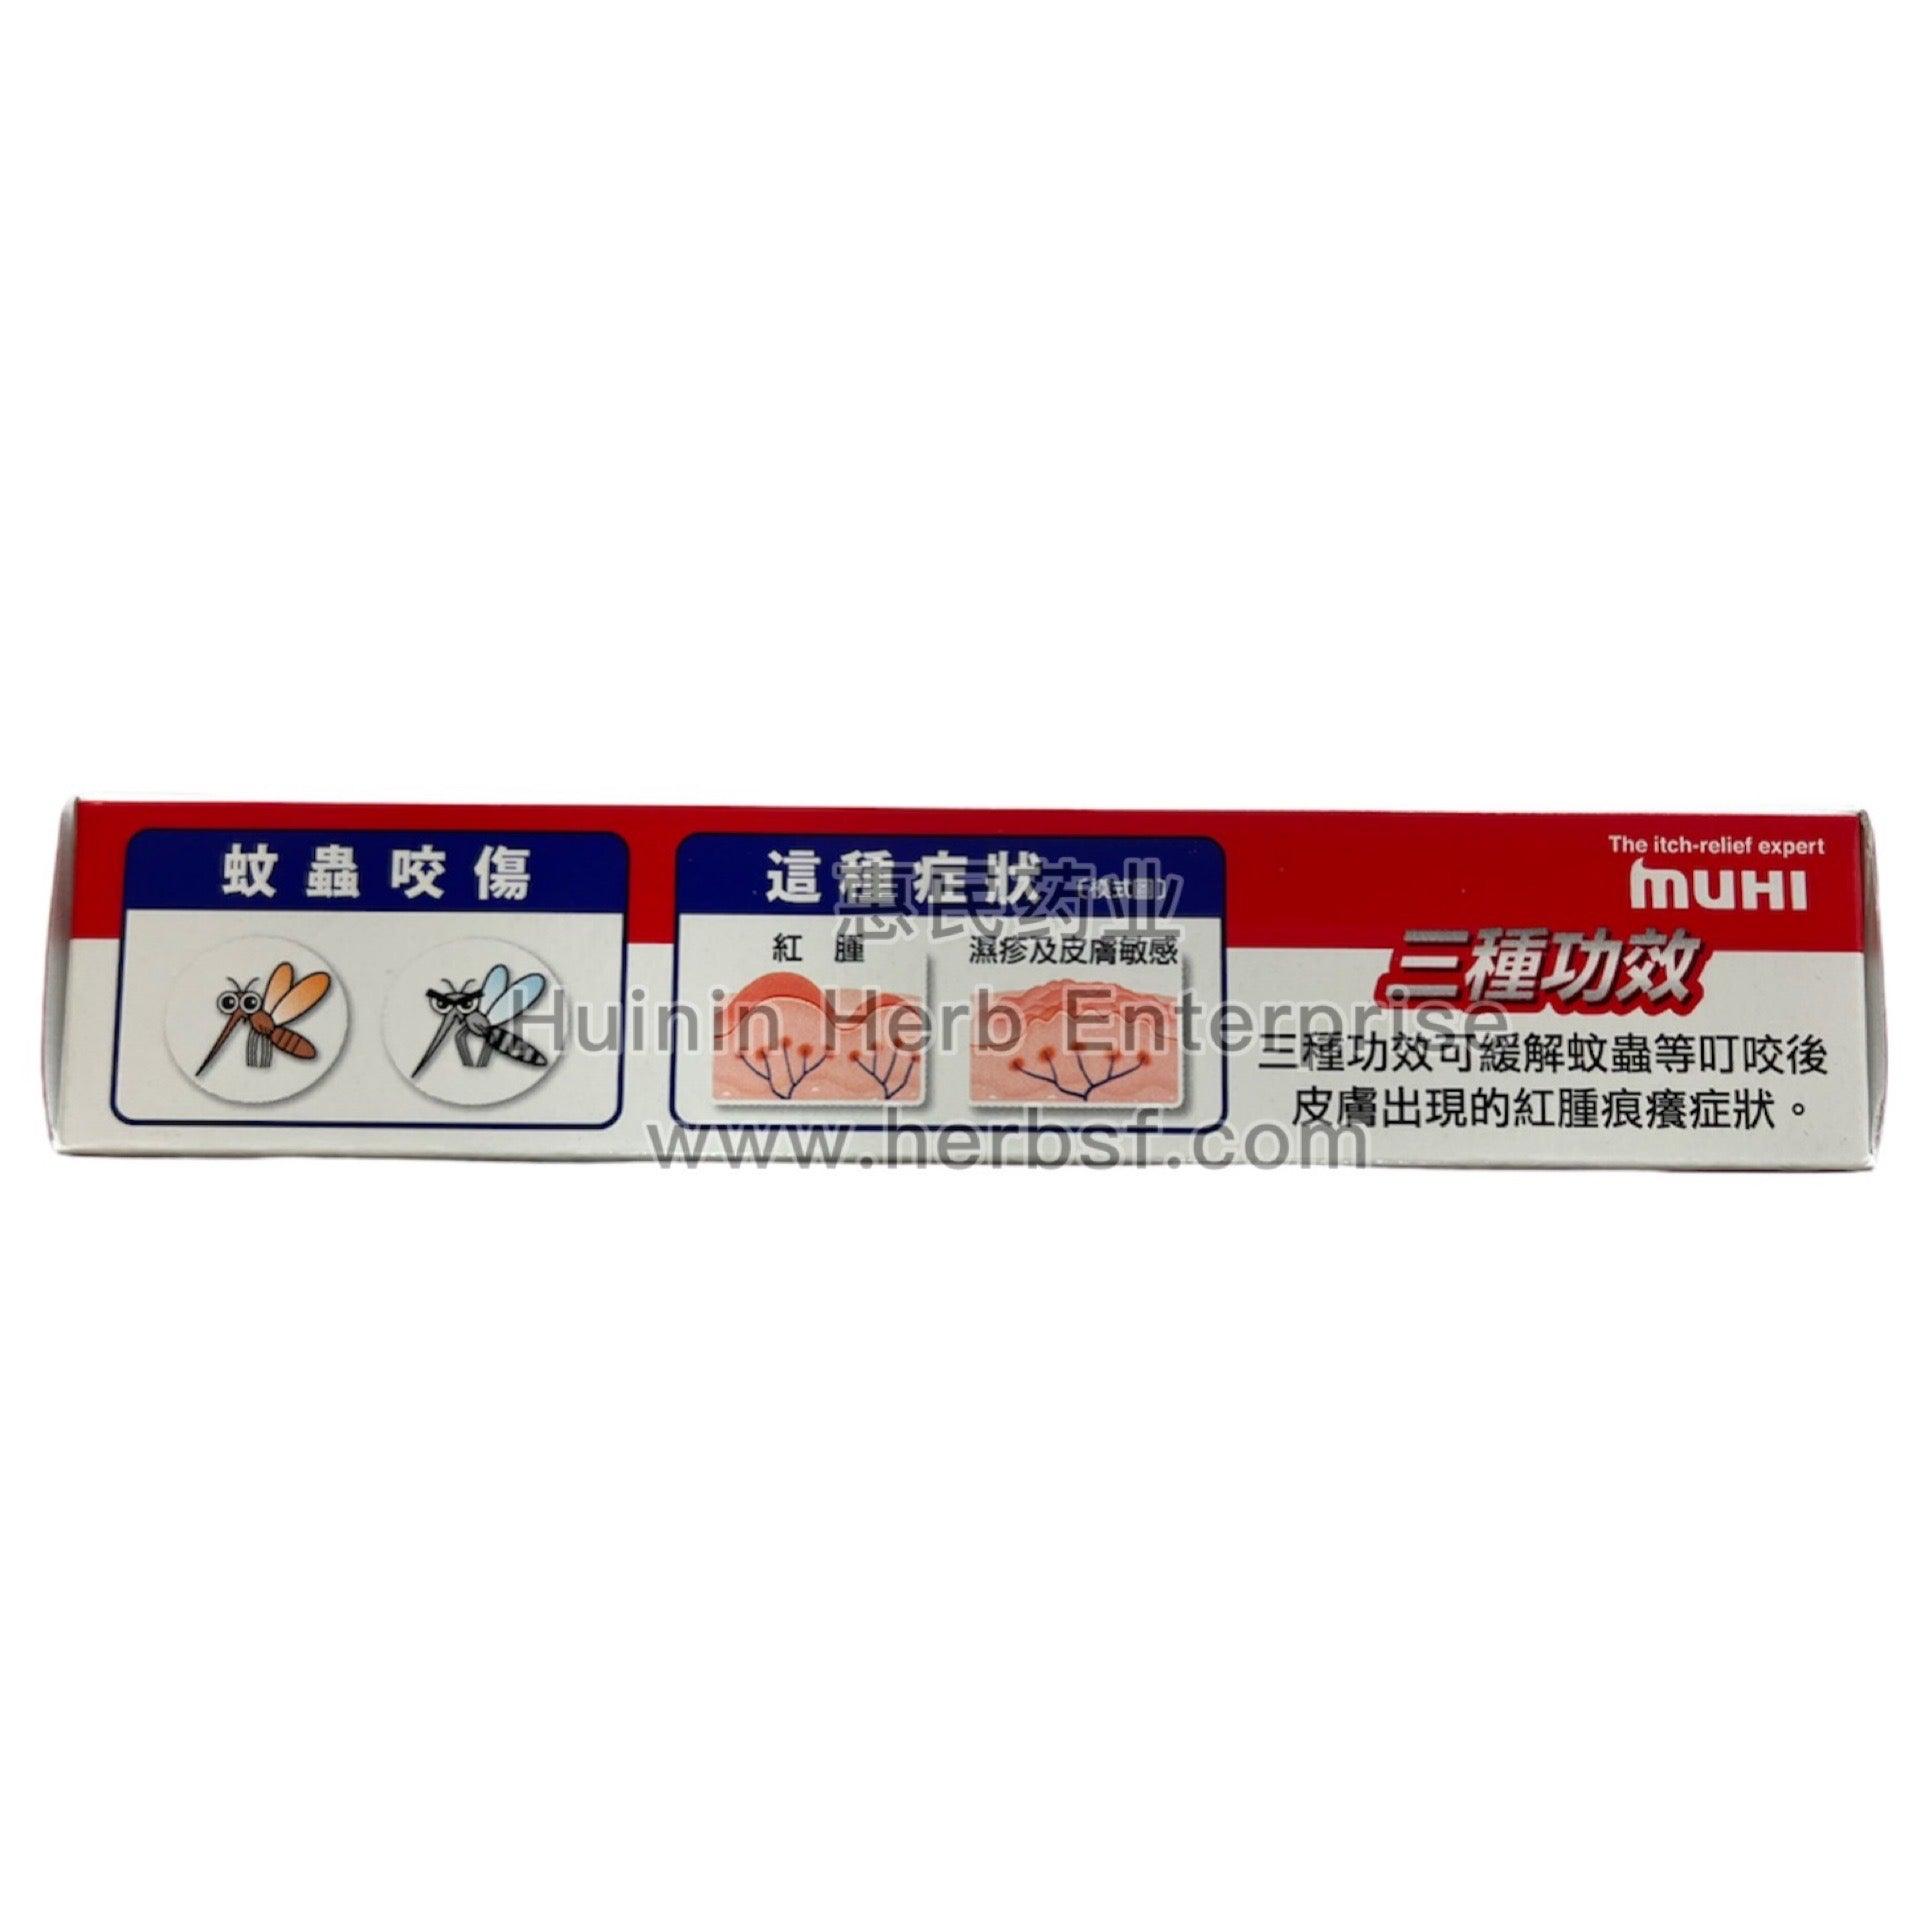 Mopiko Ointment Extra Strength Insect Mosquito Bites 18g  (Qiang Li Wu Bi Gao) - Huimin Herb Online, LLC